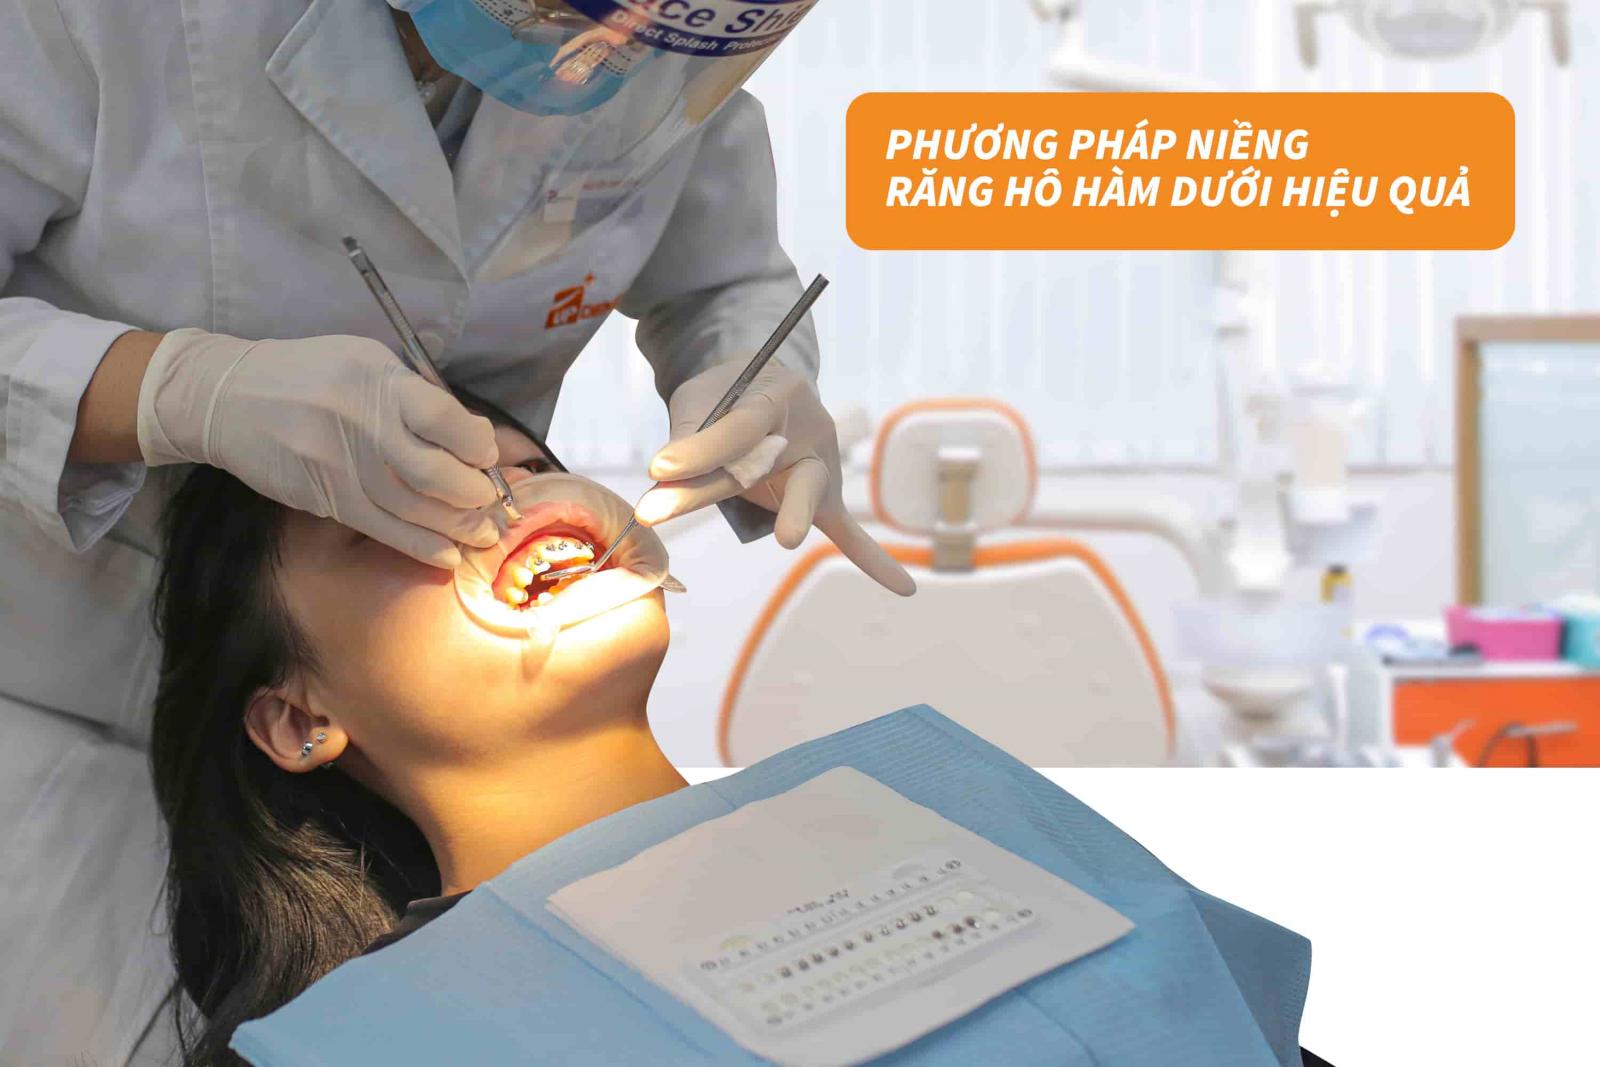 Phương pháp niềng răng hô hàm dưới hiệu quả